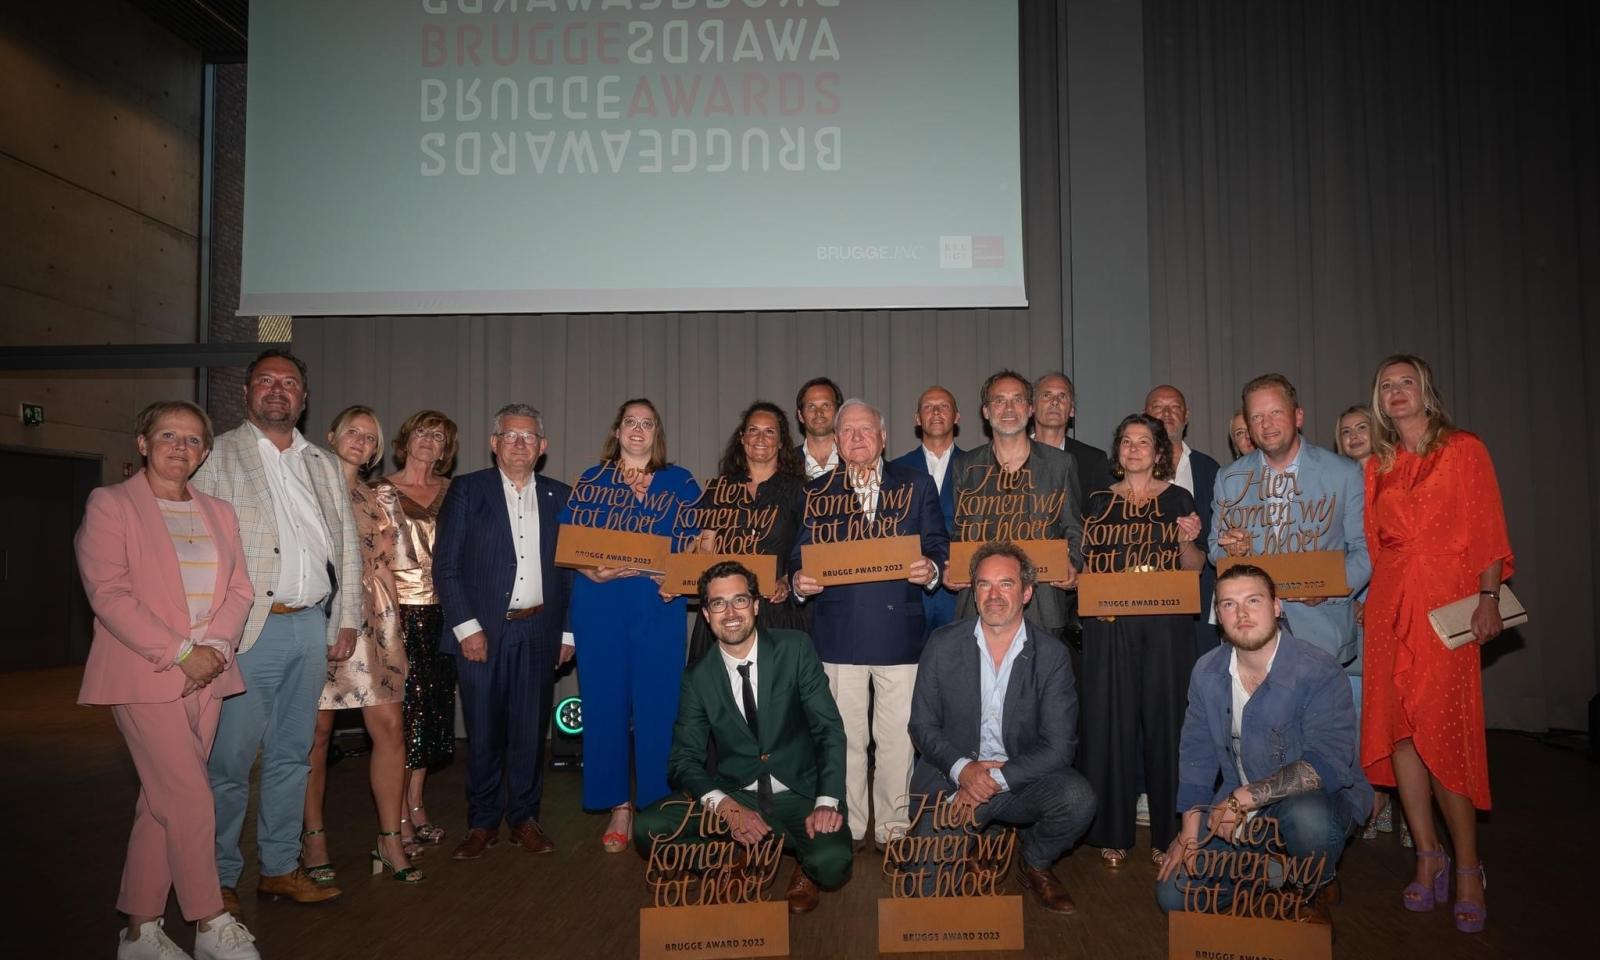 Brugge Awards 2023